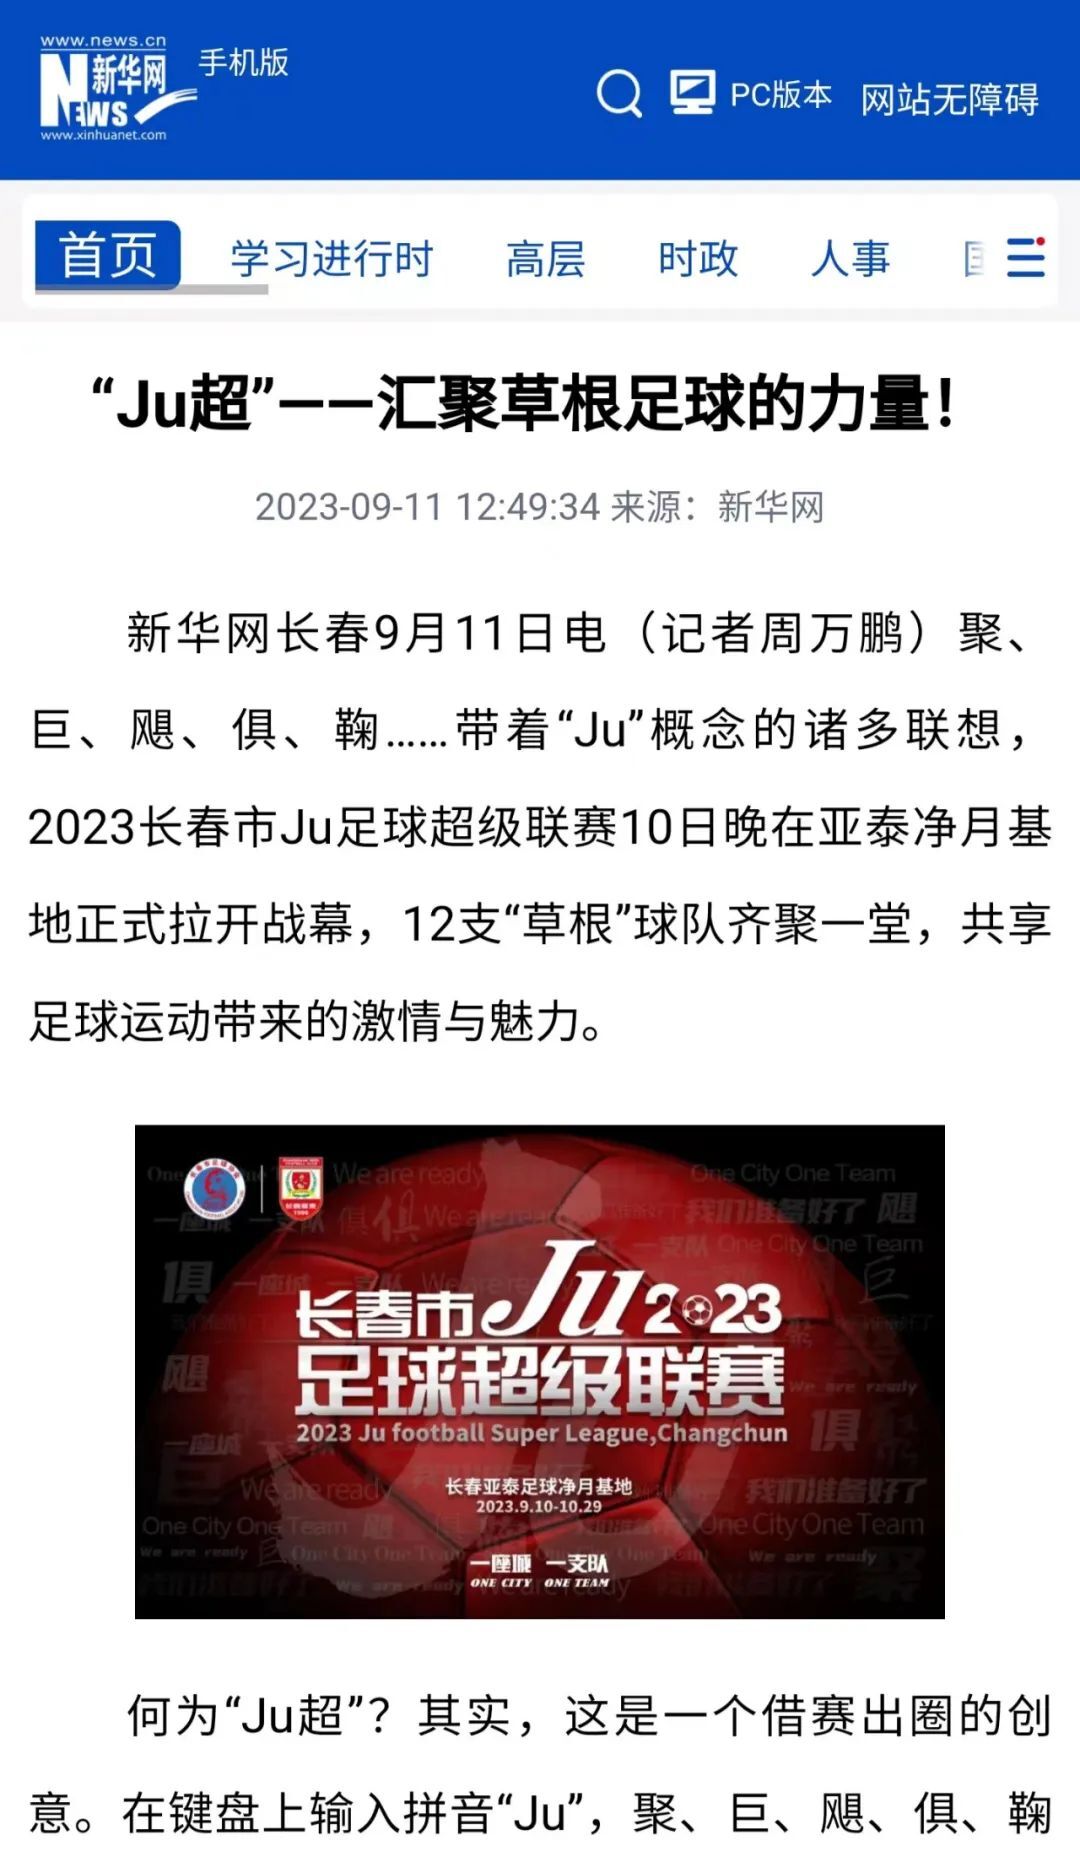 【Ju超足球大集】通过足球促进消费 首届“Ju超”引新华社等主流媒体关注